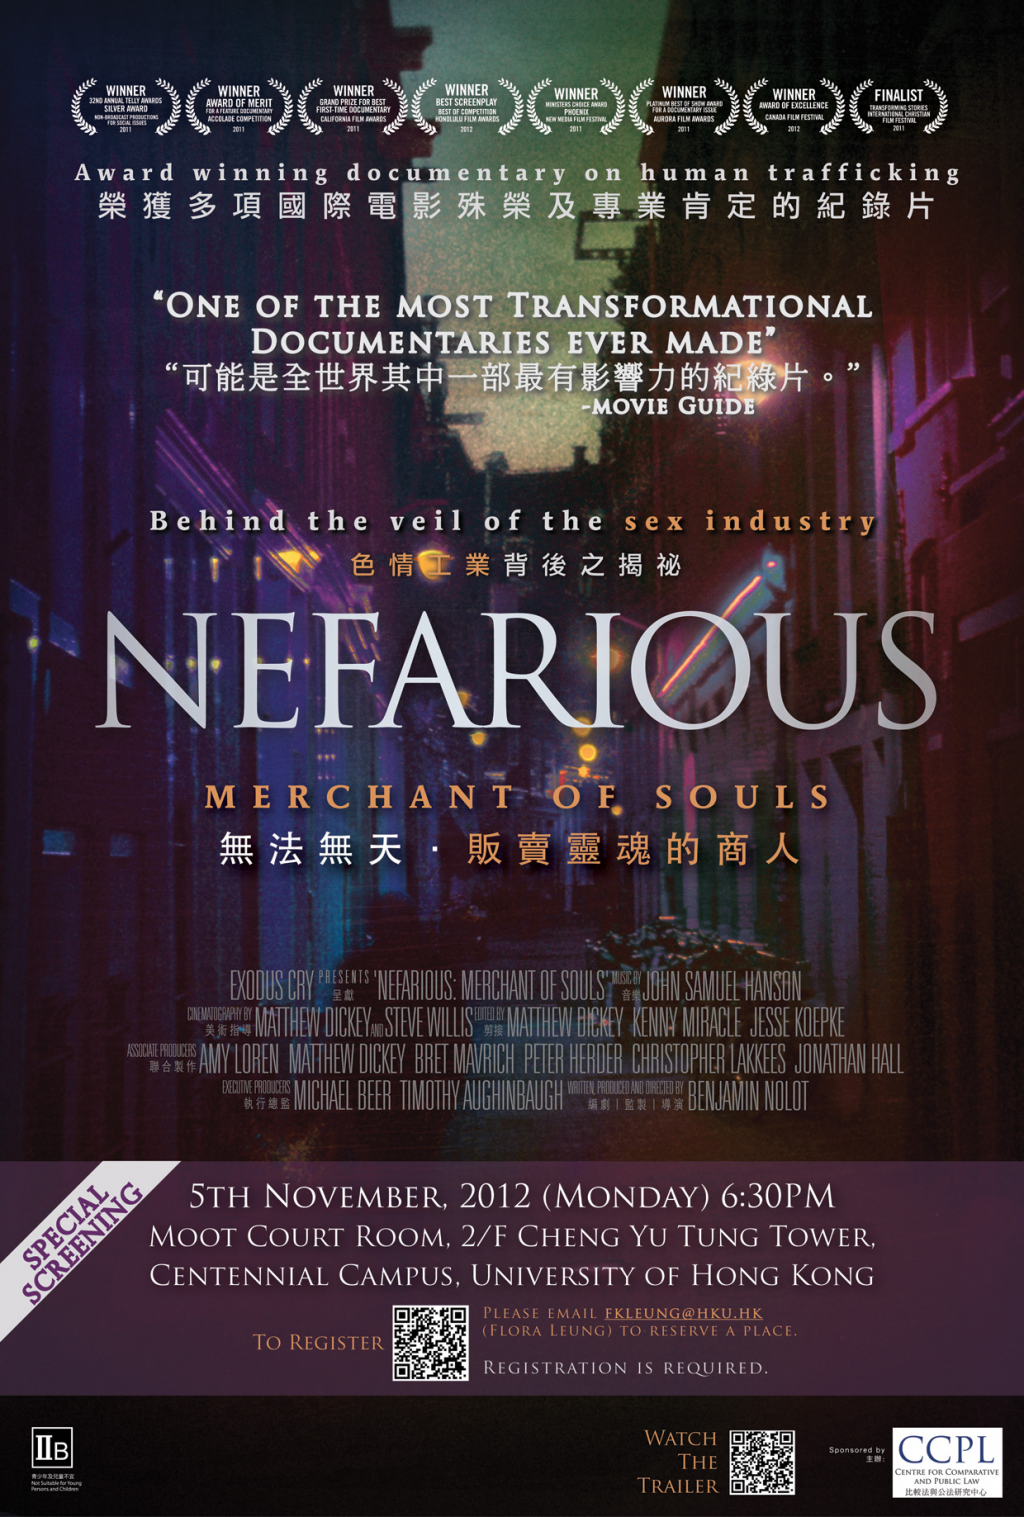 Film Screening - Nefarious: Merchant of Souls